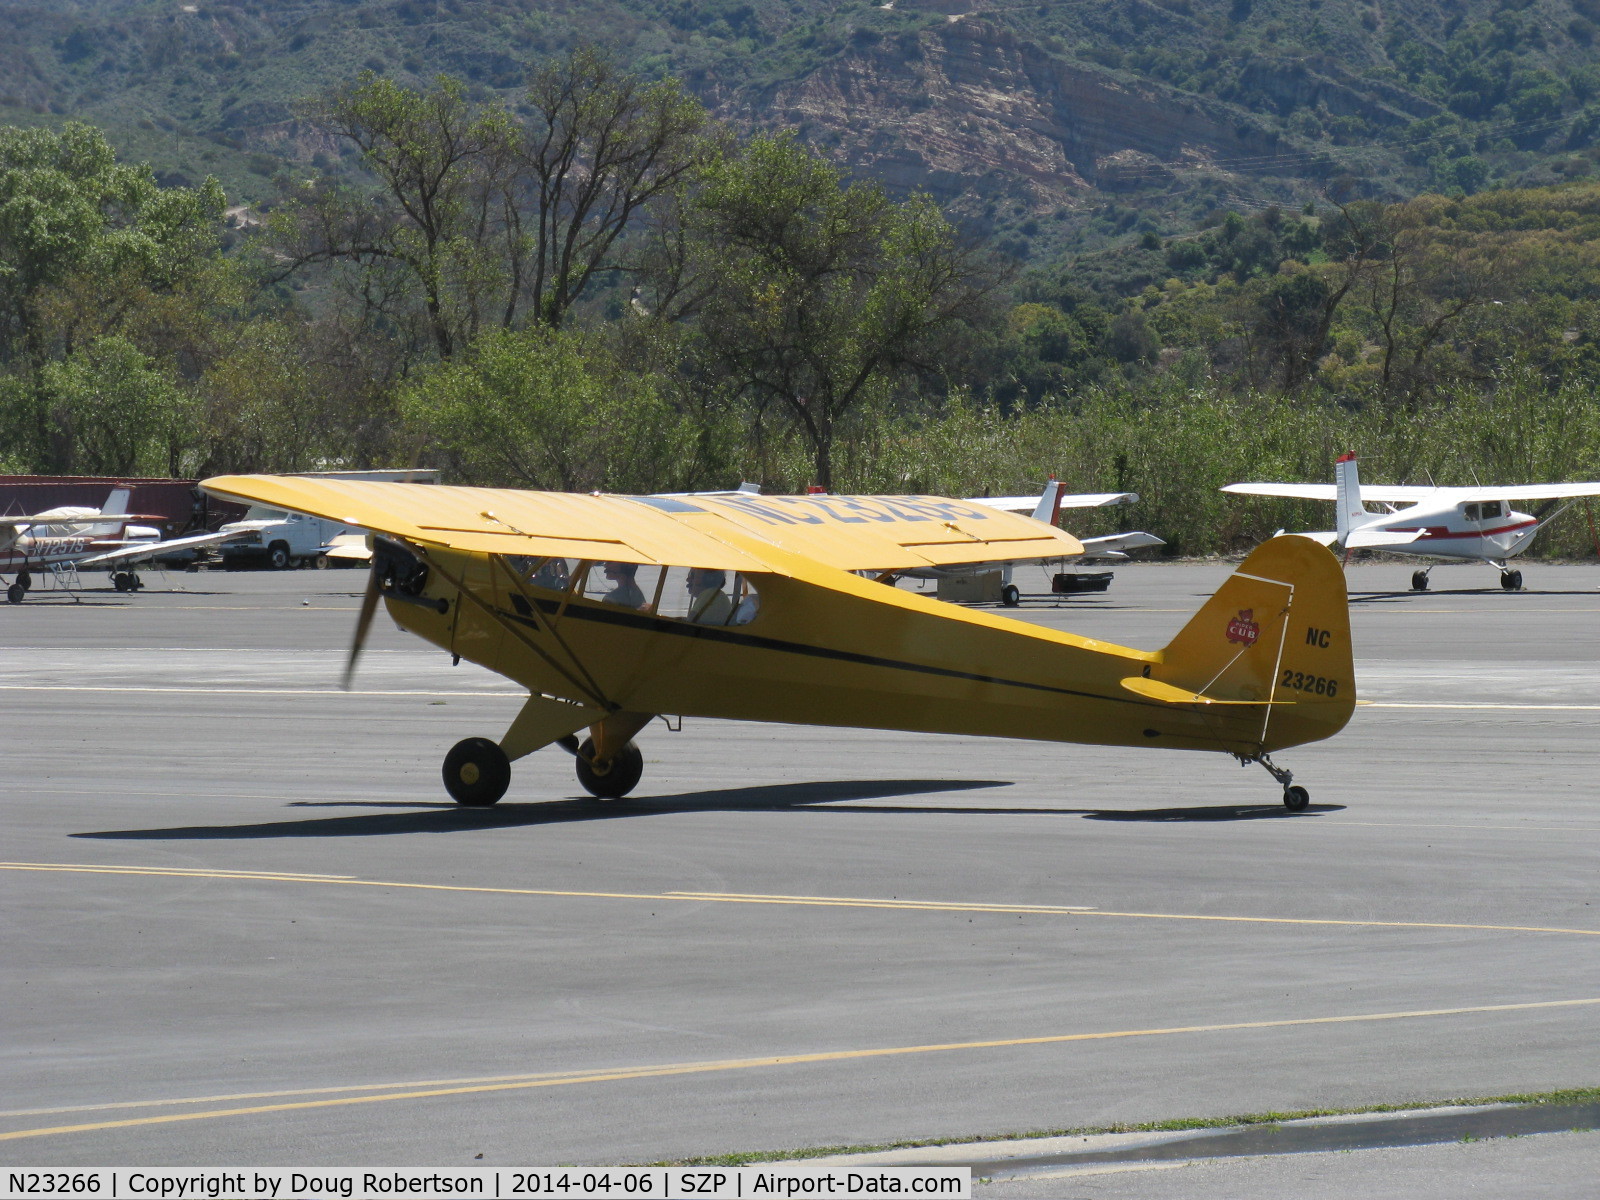 N23266, 1939 Piper J3C-65 Cub Cub C/N 3113, 1939 Piper J3C-65 CUB, Continental A&C65 65 Hp, taxi